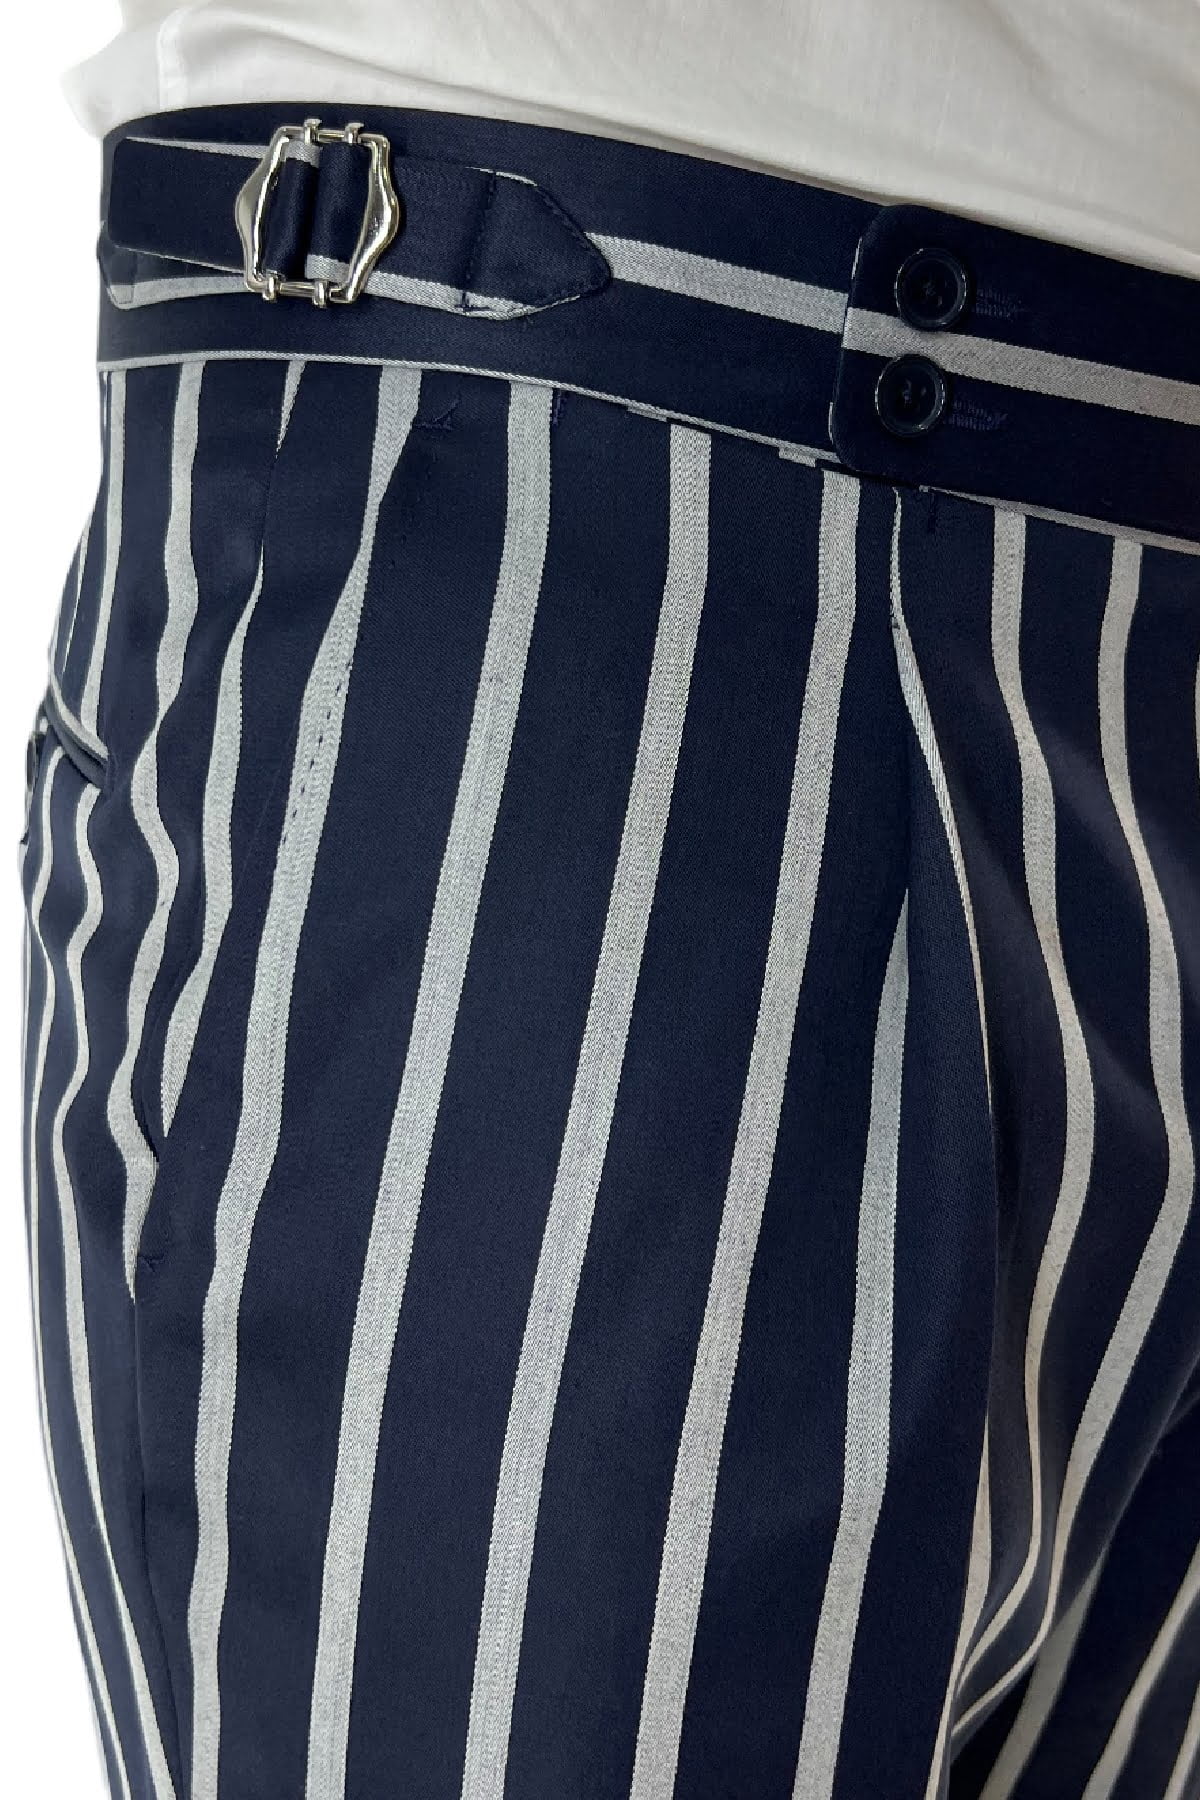 Pantalone uomo blu riga grigia in fresco lana 120's Holland & Sherry vita alta con pinces fibbie laterali e risvolto 4cm